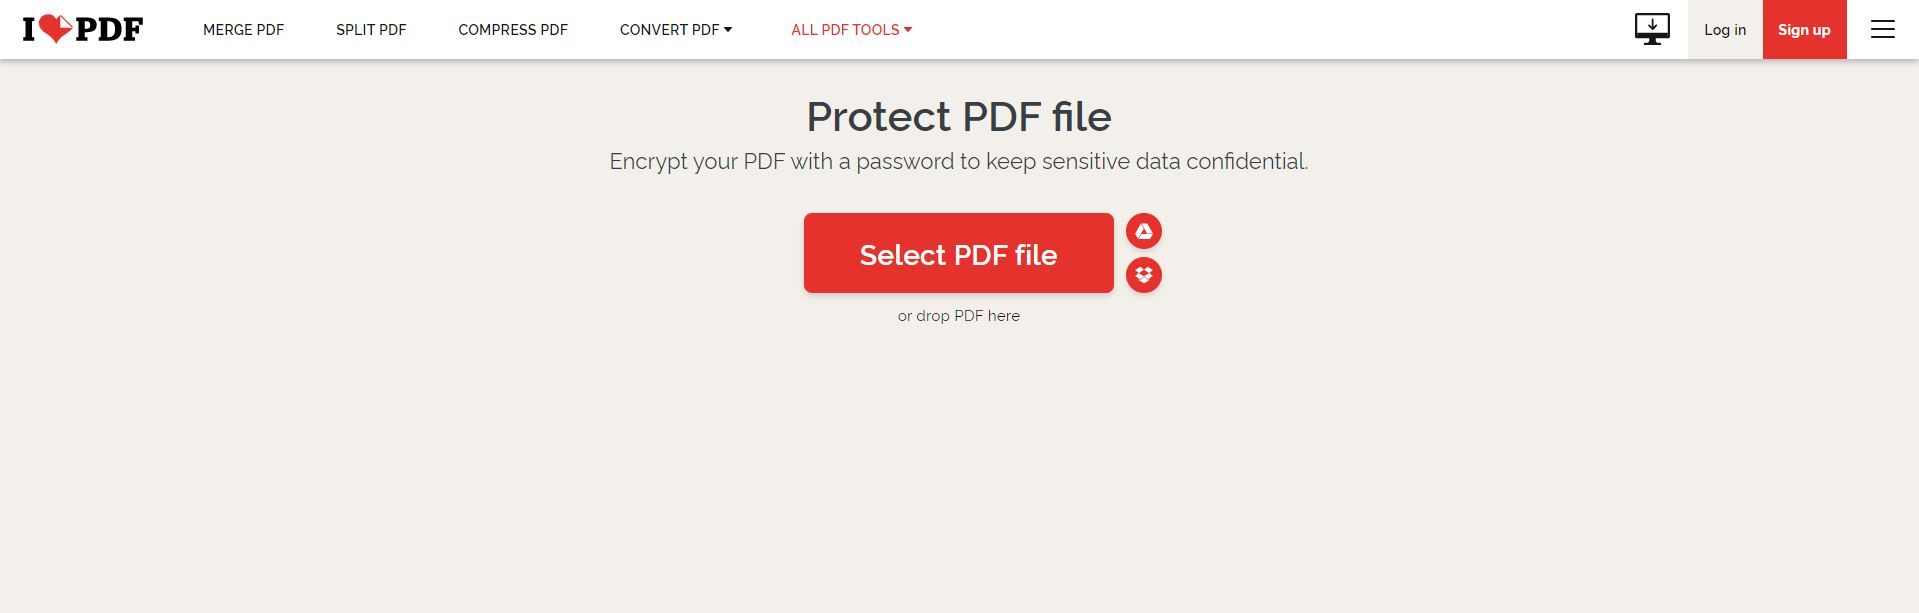 iLovePDF open PDF file